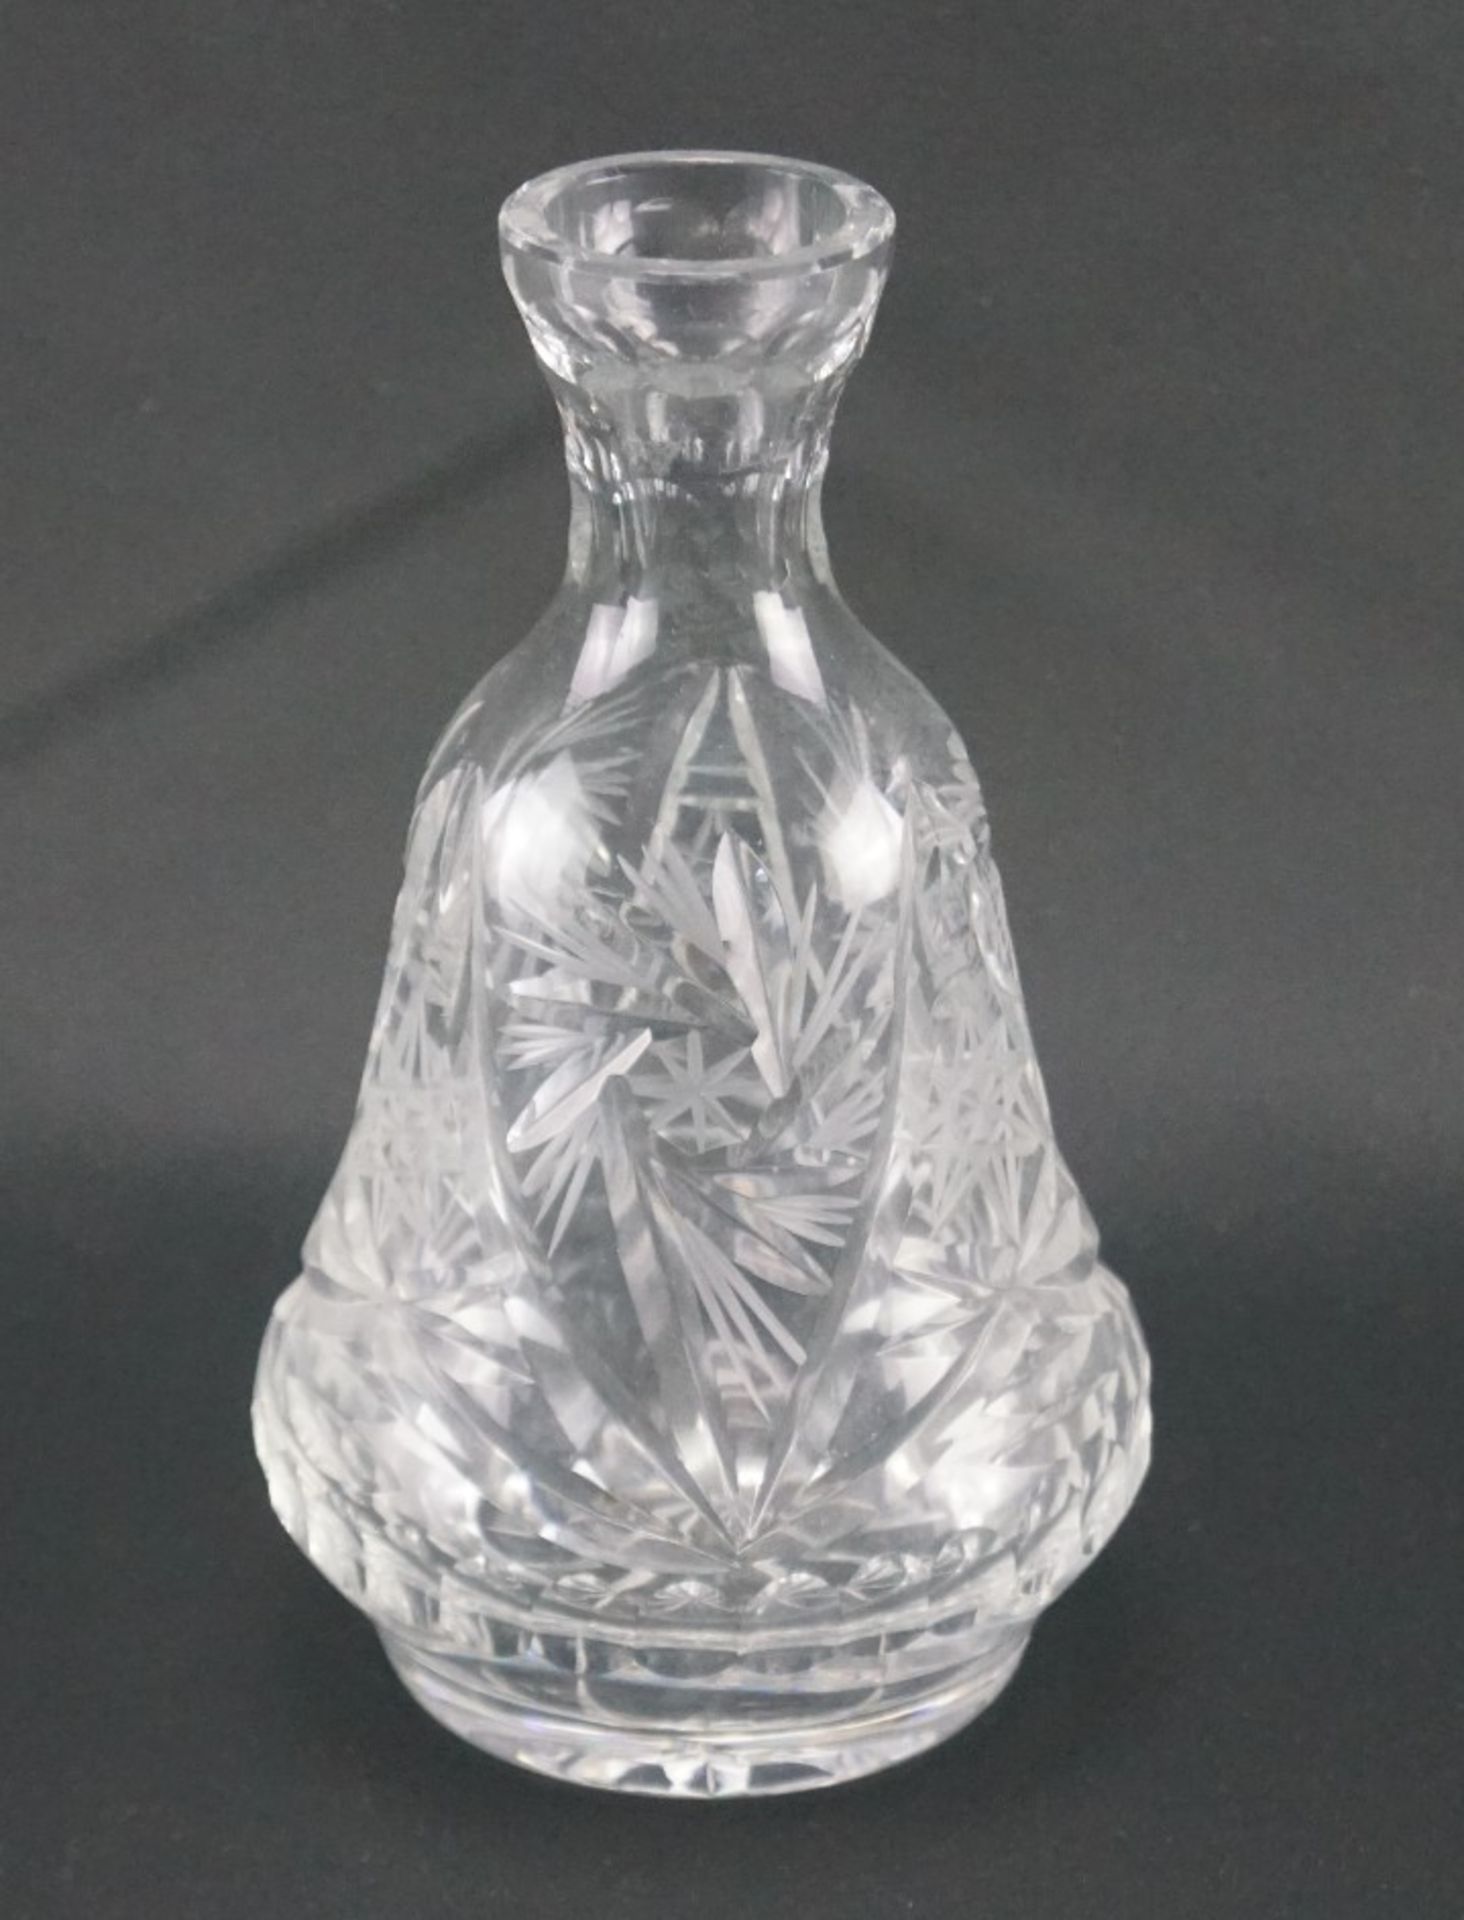 Kleiner Flakon aus GlasGlas, Höhe des Flakons 18 cm, Stopfen fehlt ansonsten in einem guten Zustand - Bild 2 aus 2